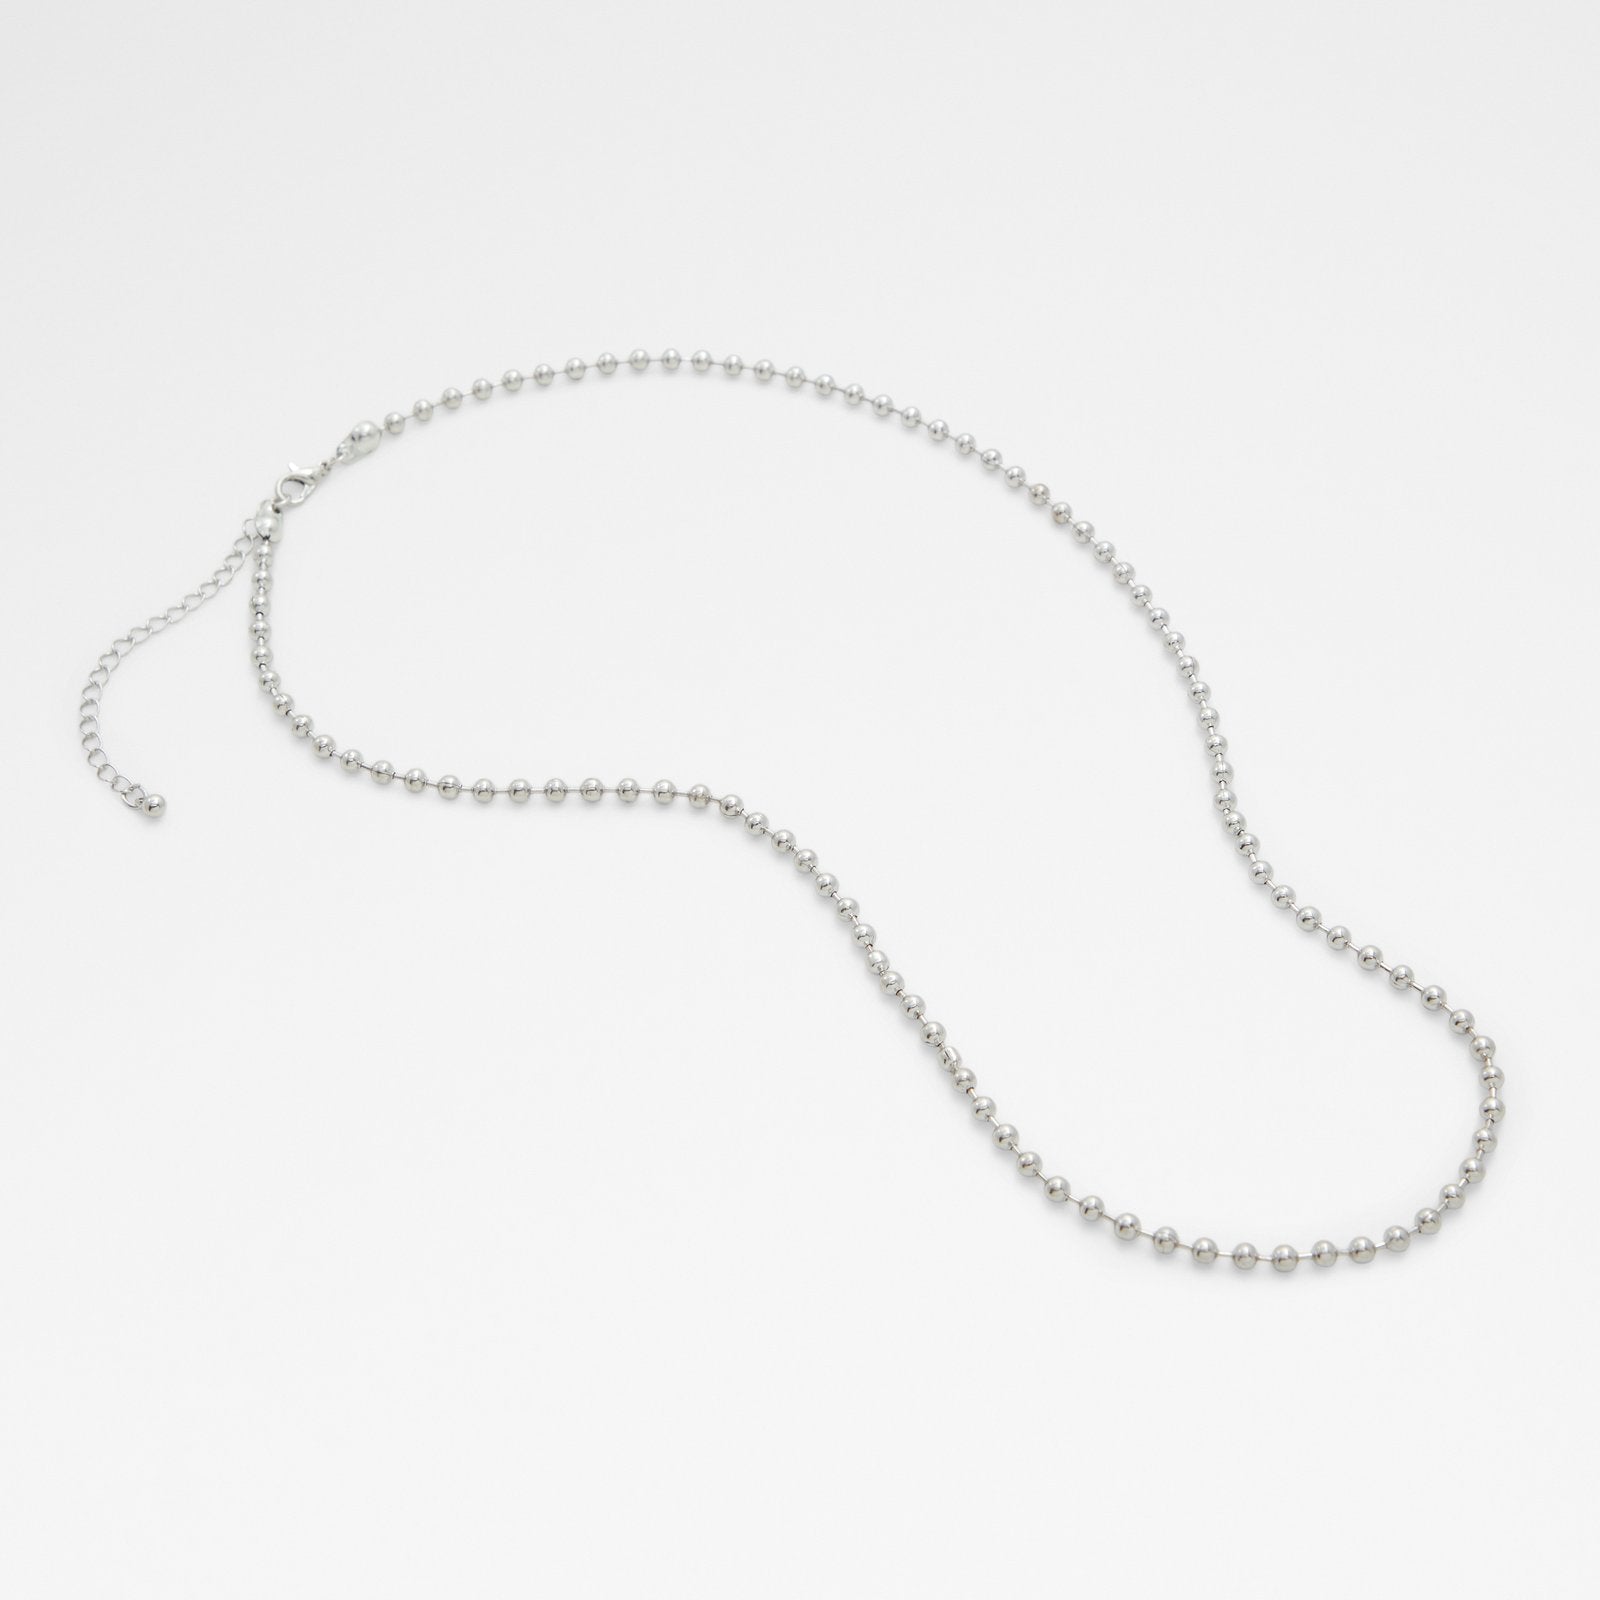 Orcades / Jewelry Accessory - Silver - ALDO KSA